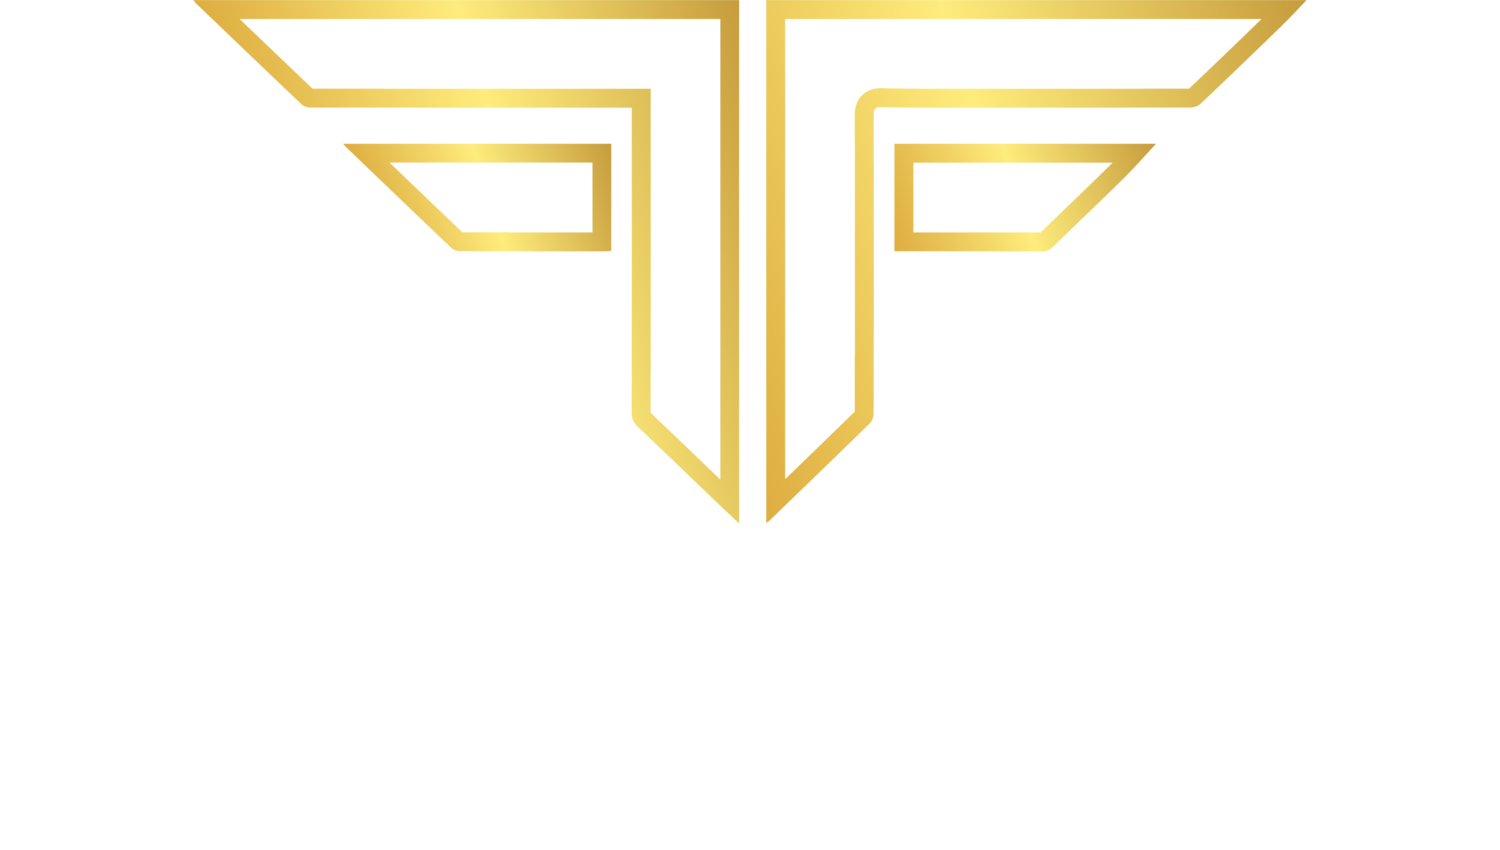 FETE & FANFARE EVENTS